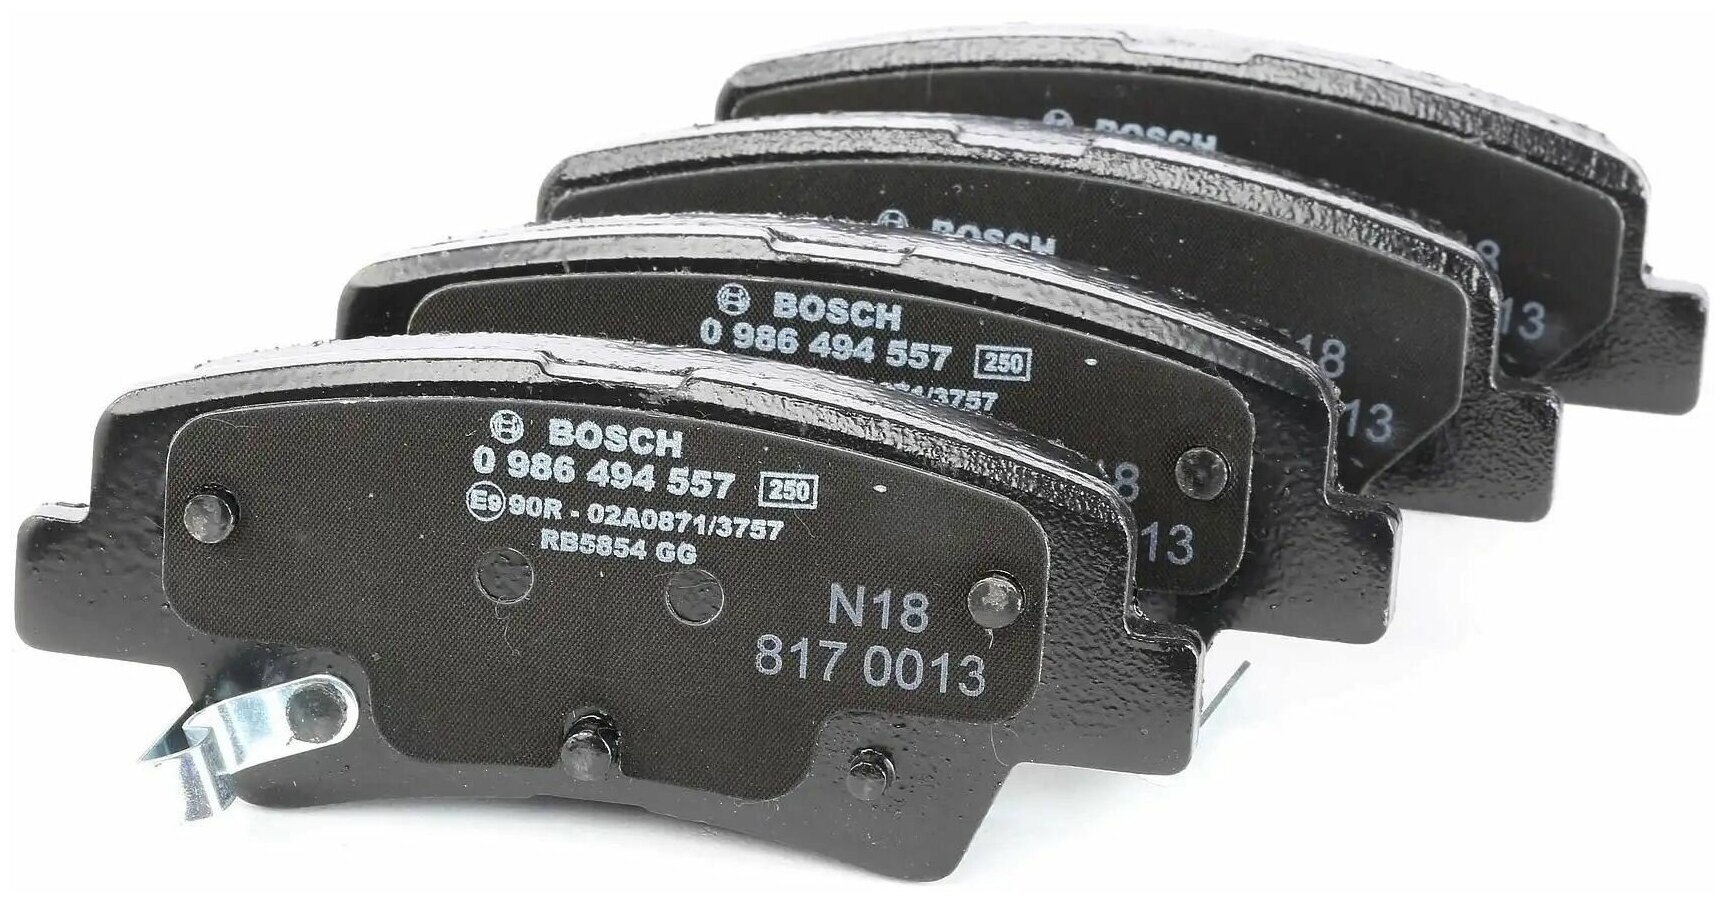 Дисковые тормозные колодки задние Bosch 0986494557 для Hyundai, SsangYong, Kia (4 шт.) - фотография № 5